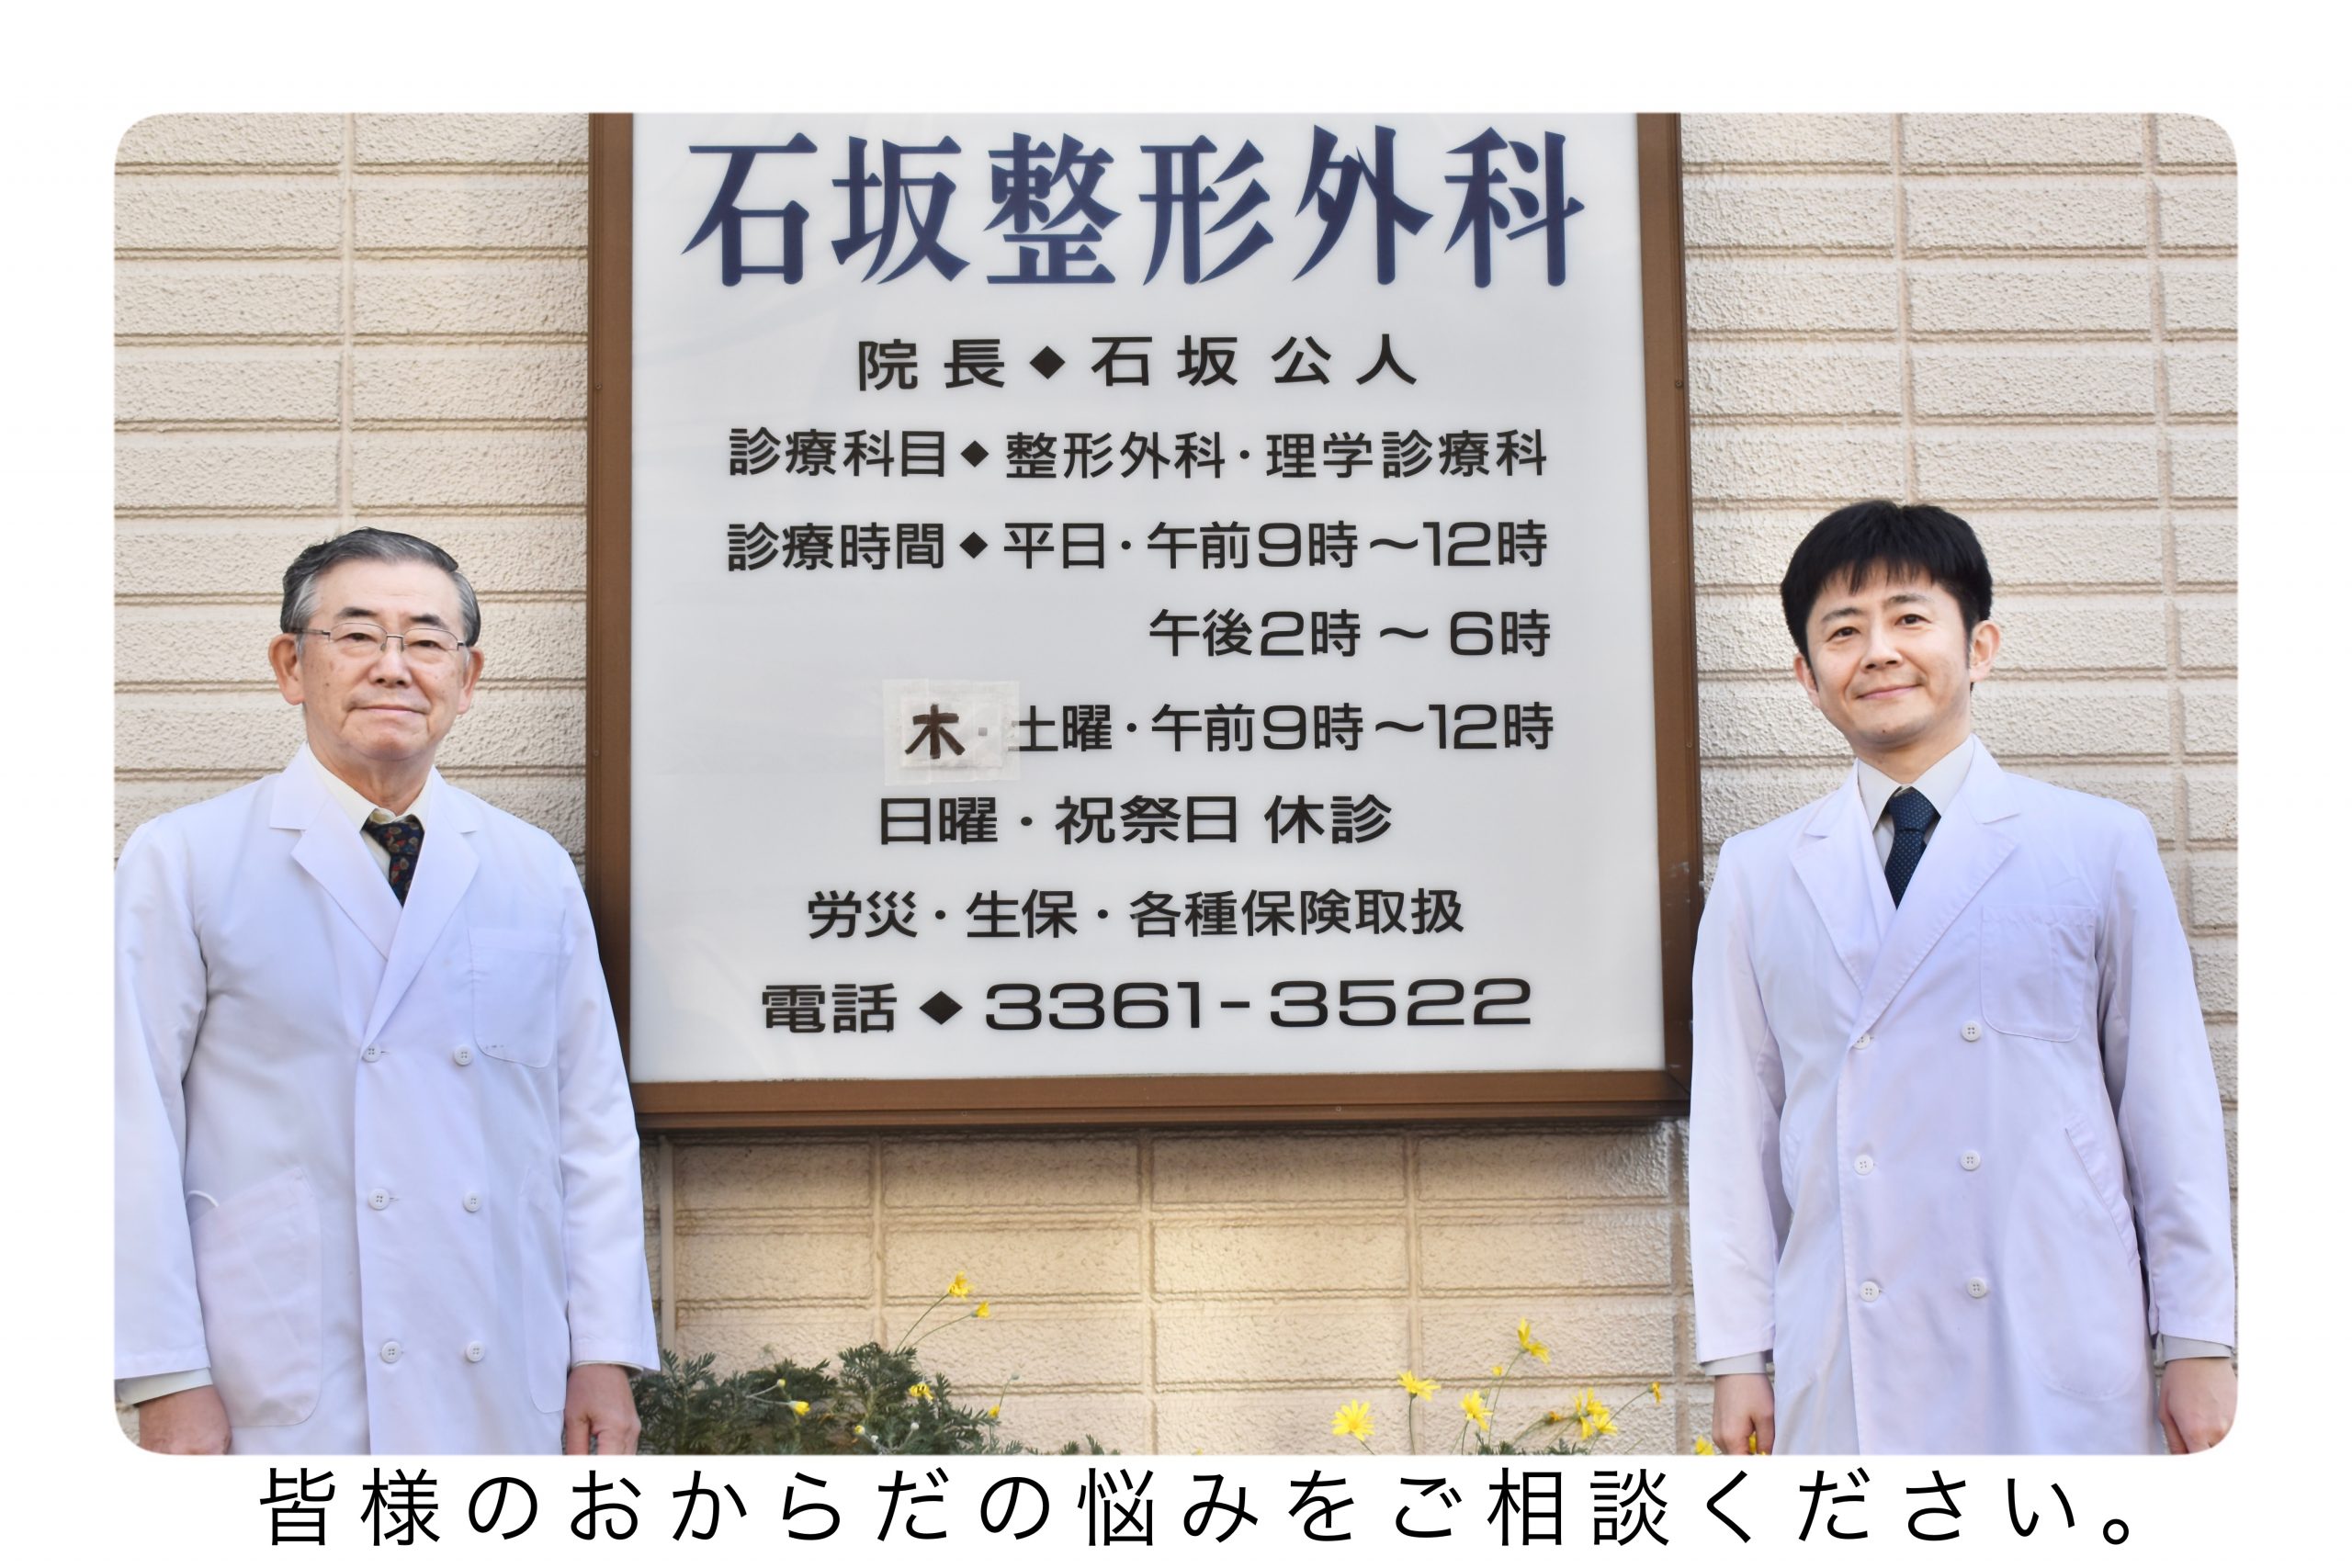 石坂整形外科 | 東京都中野区の整形外科・リハビリテーション科